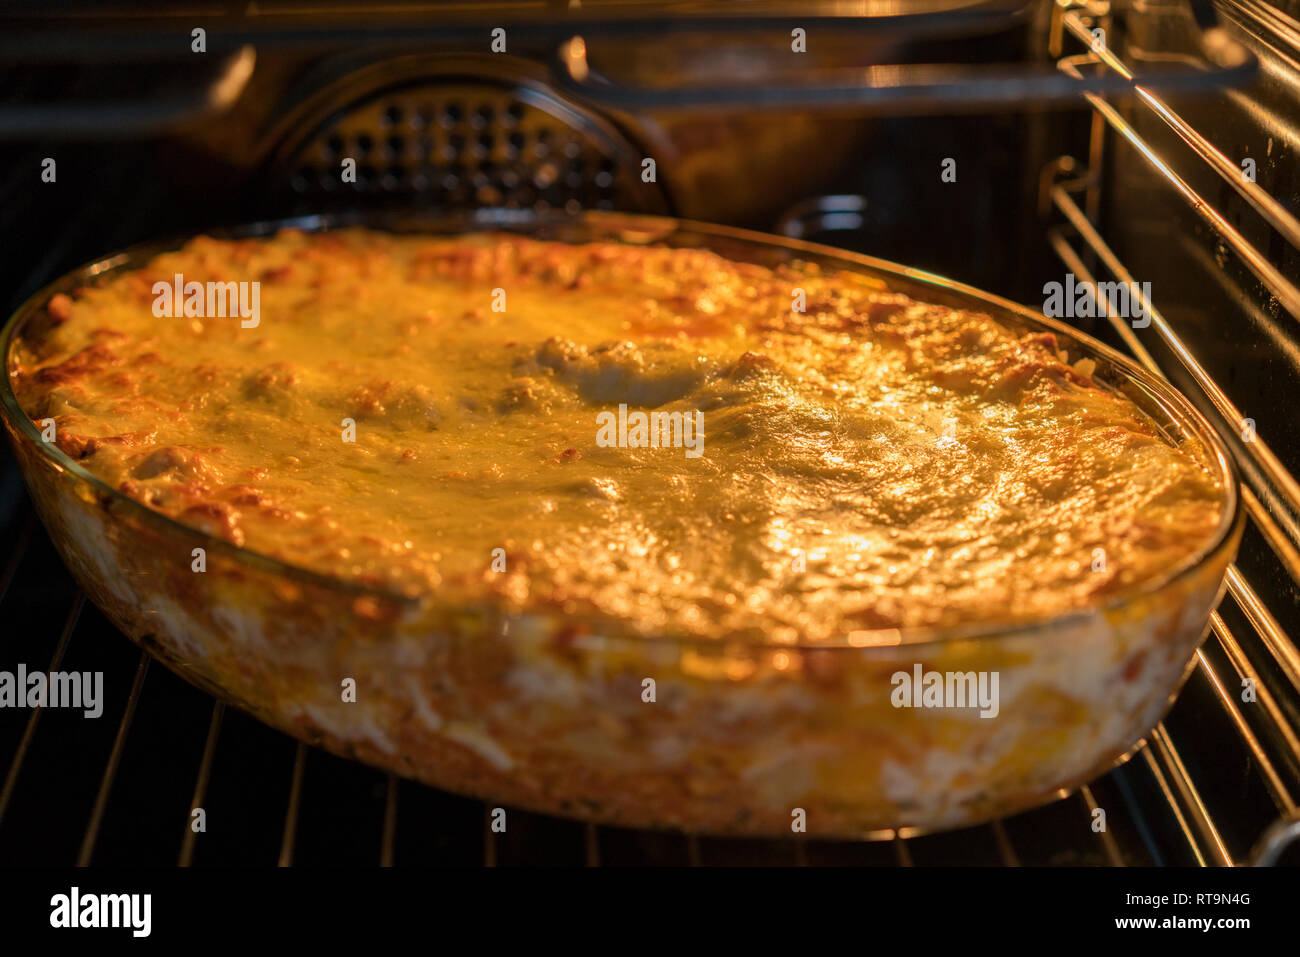 Teller Lasagne Kochen im Backofen. Backblech mit Spinat Lasagne im Ofen  Stockfotografie - Alamy